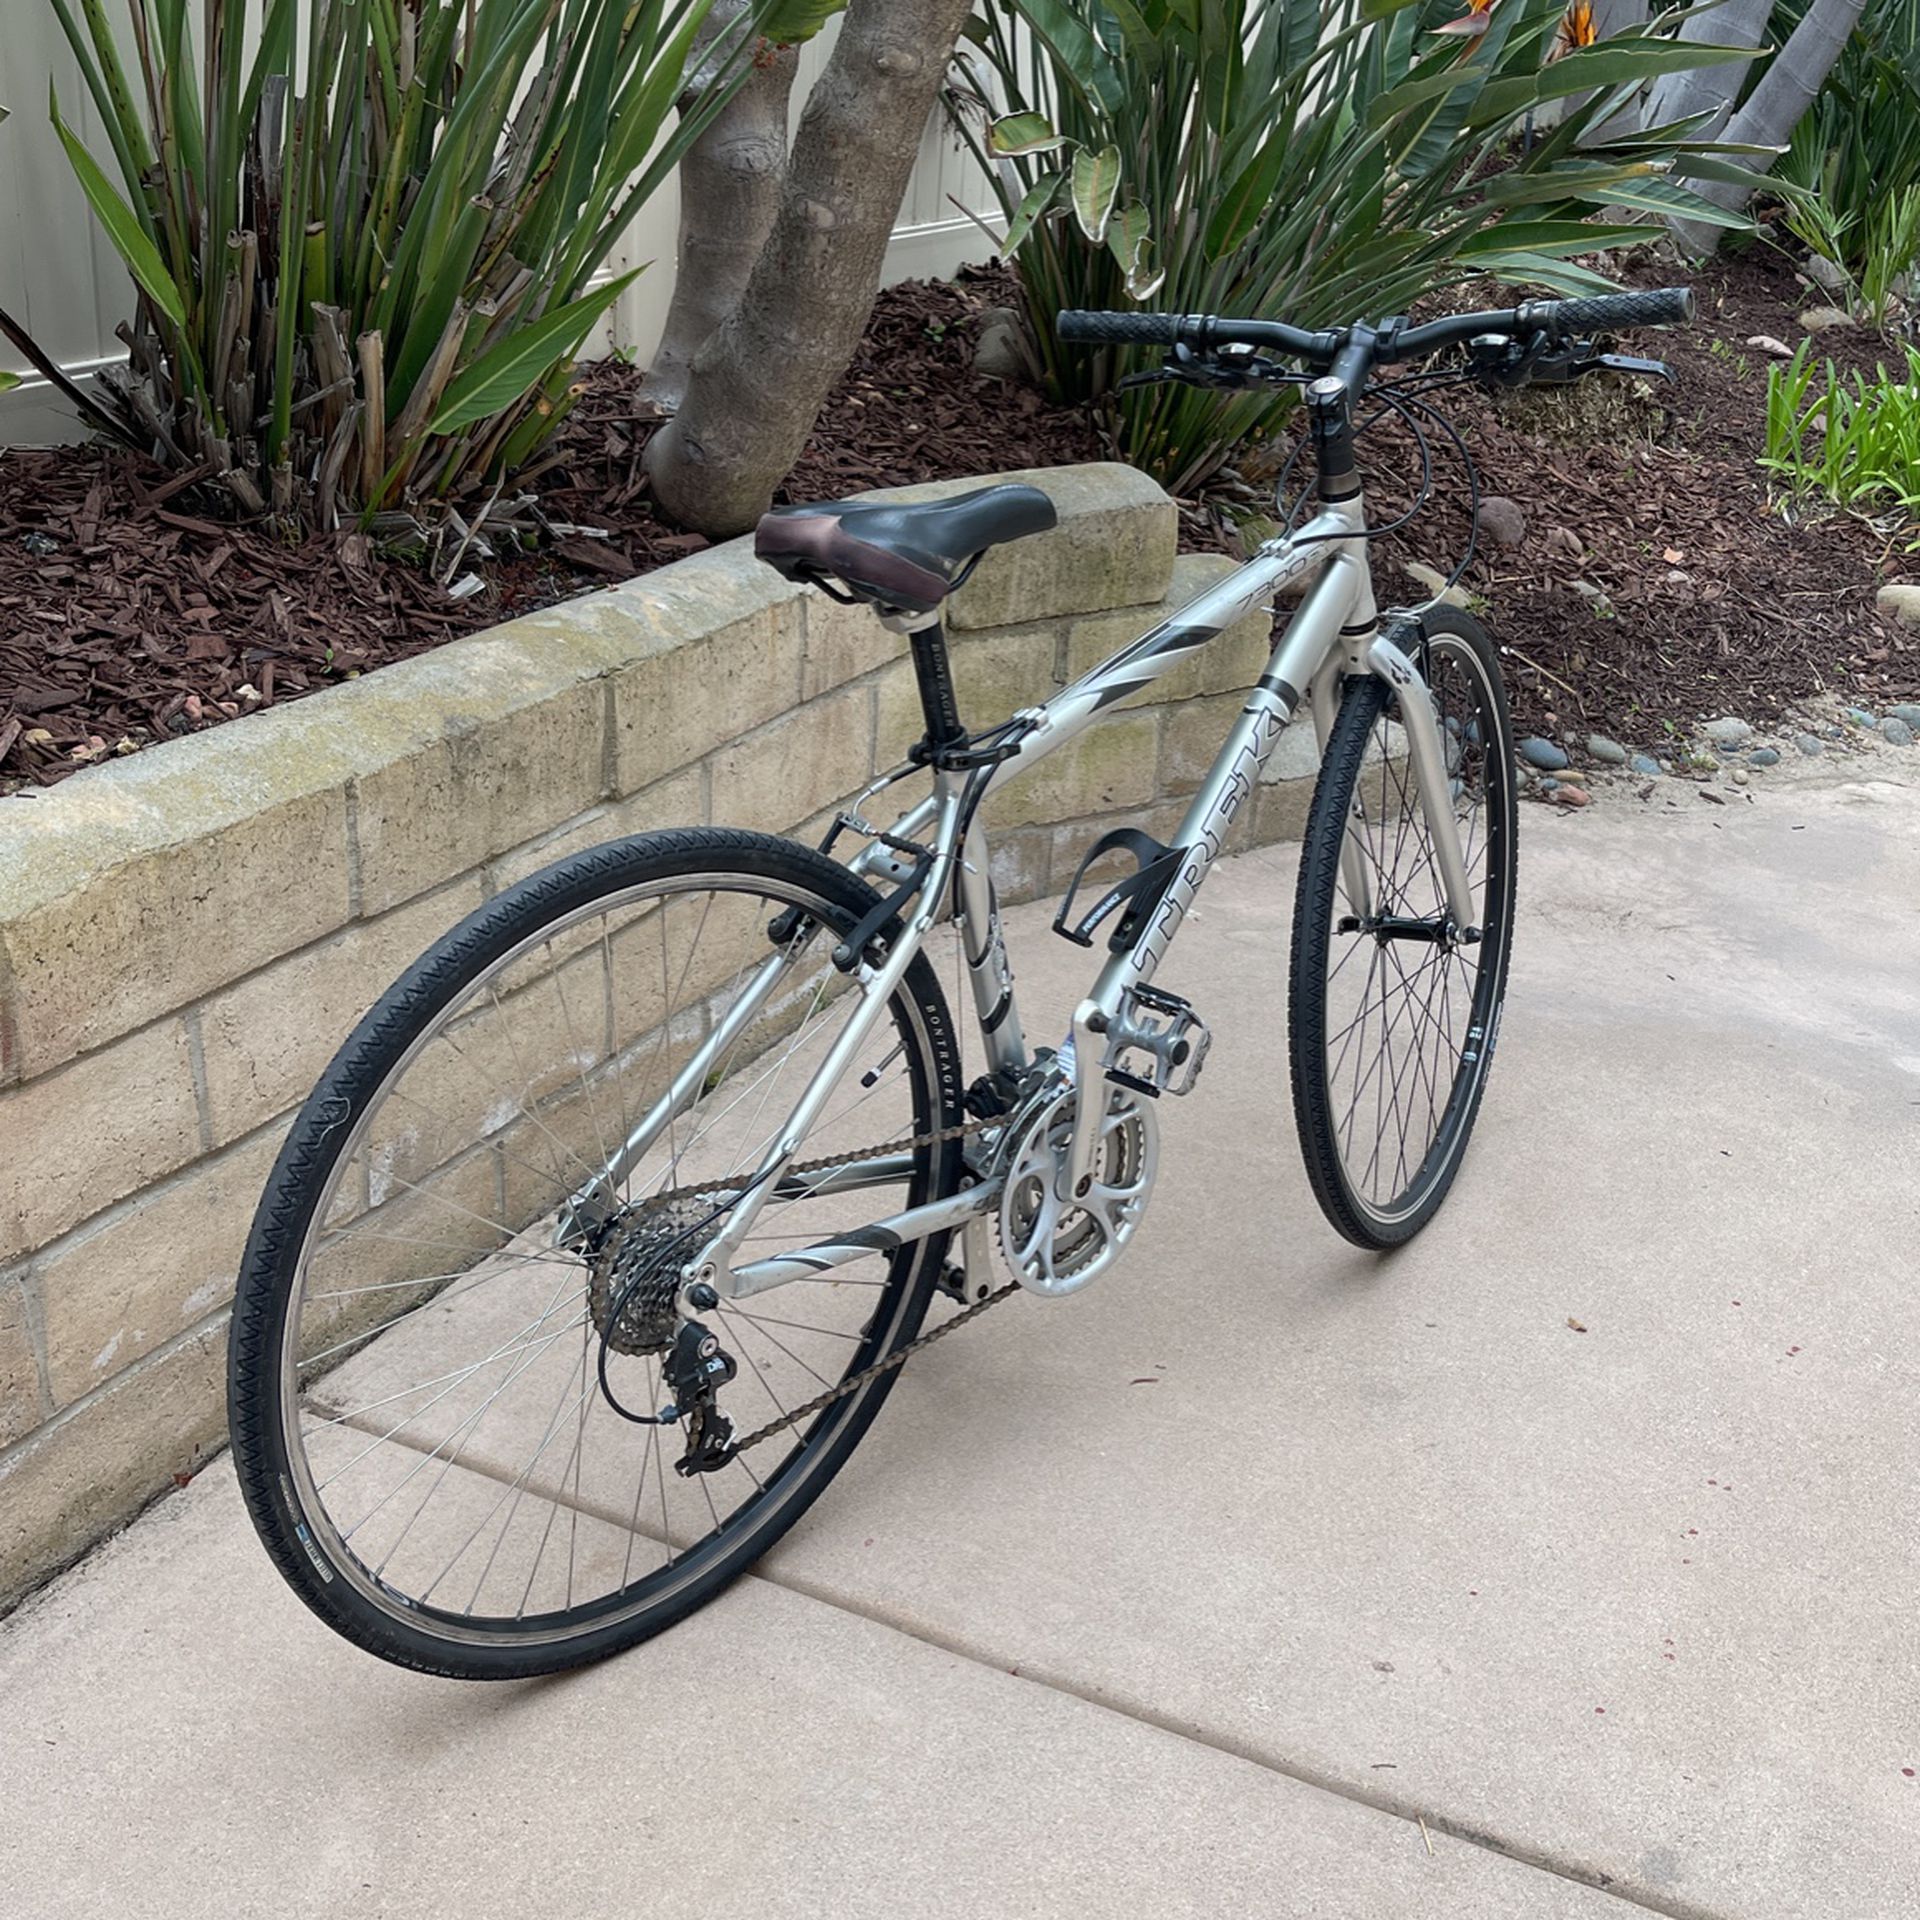 Trek 7300 FX 17.5” 24 Speed Road Bicycle 